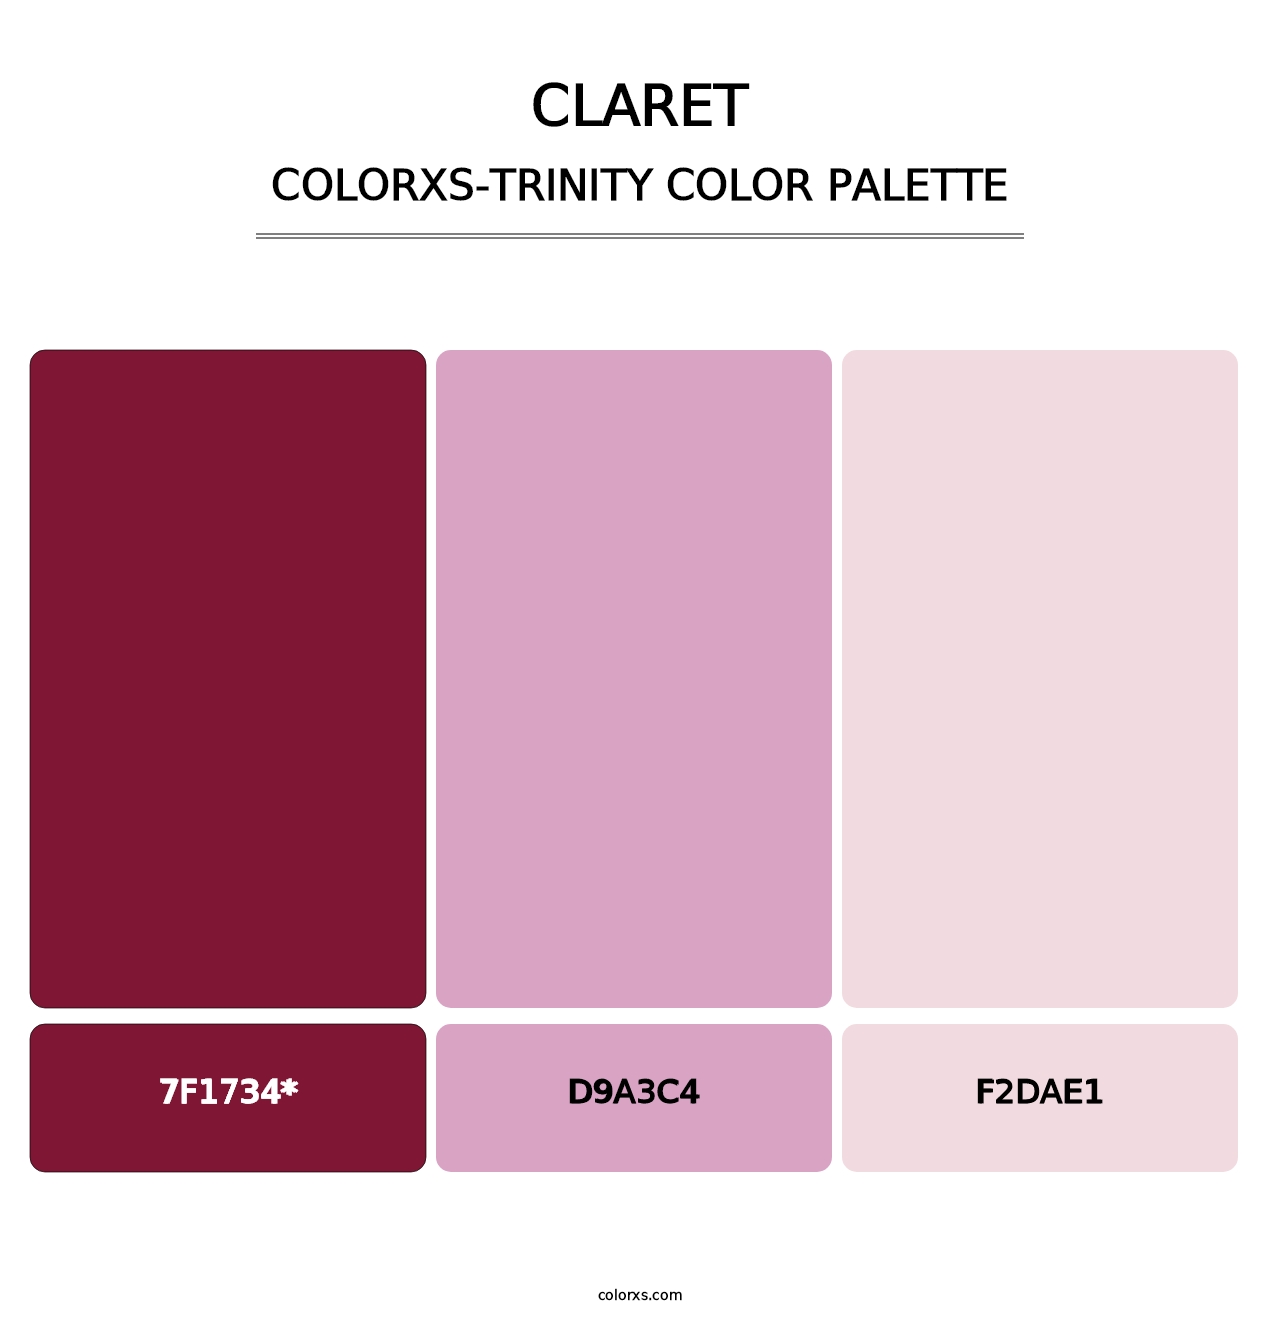 Claret - Colorxs Trinity Palette